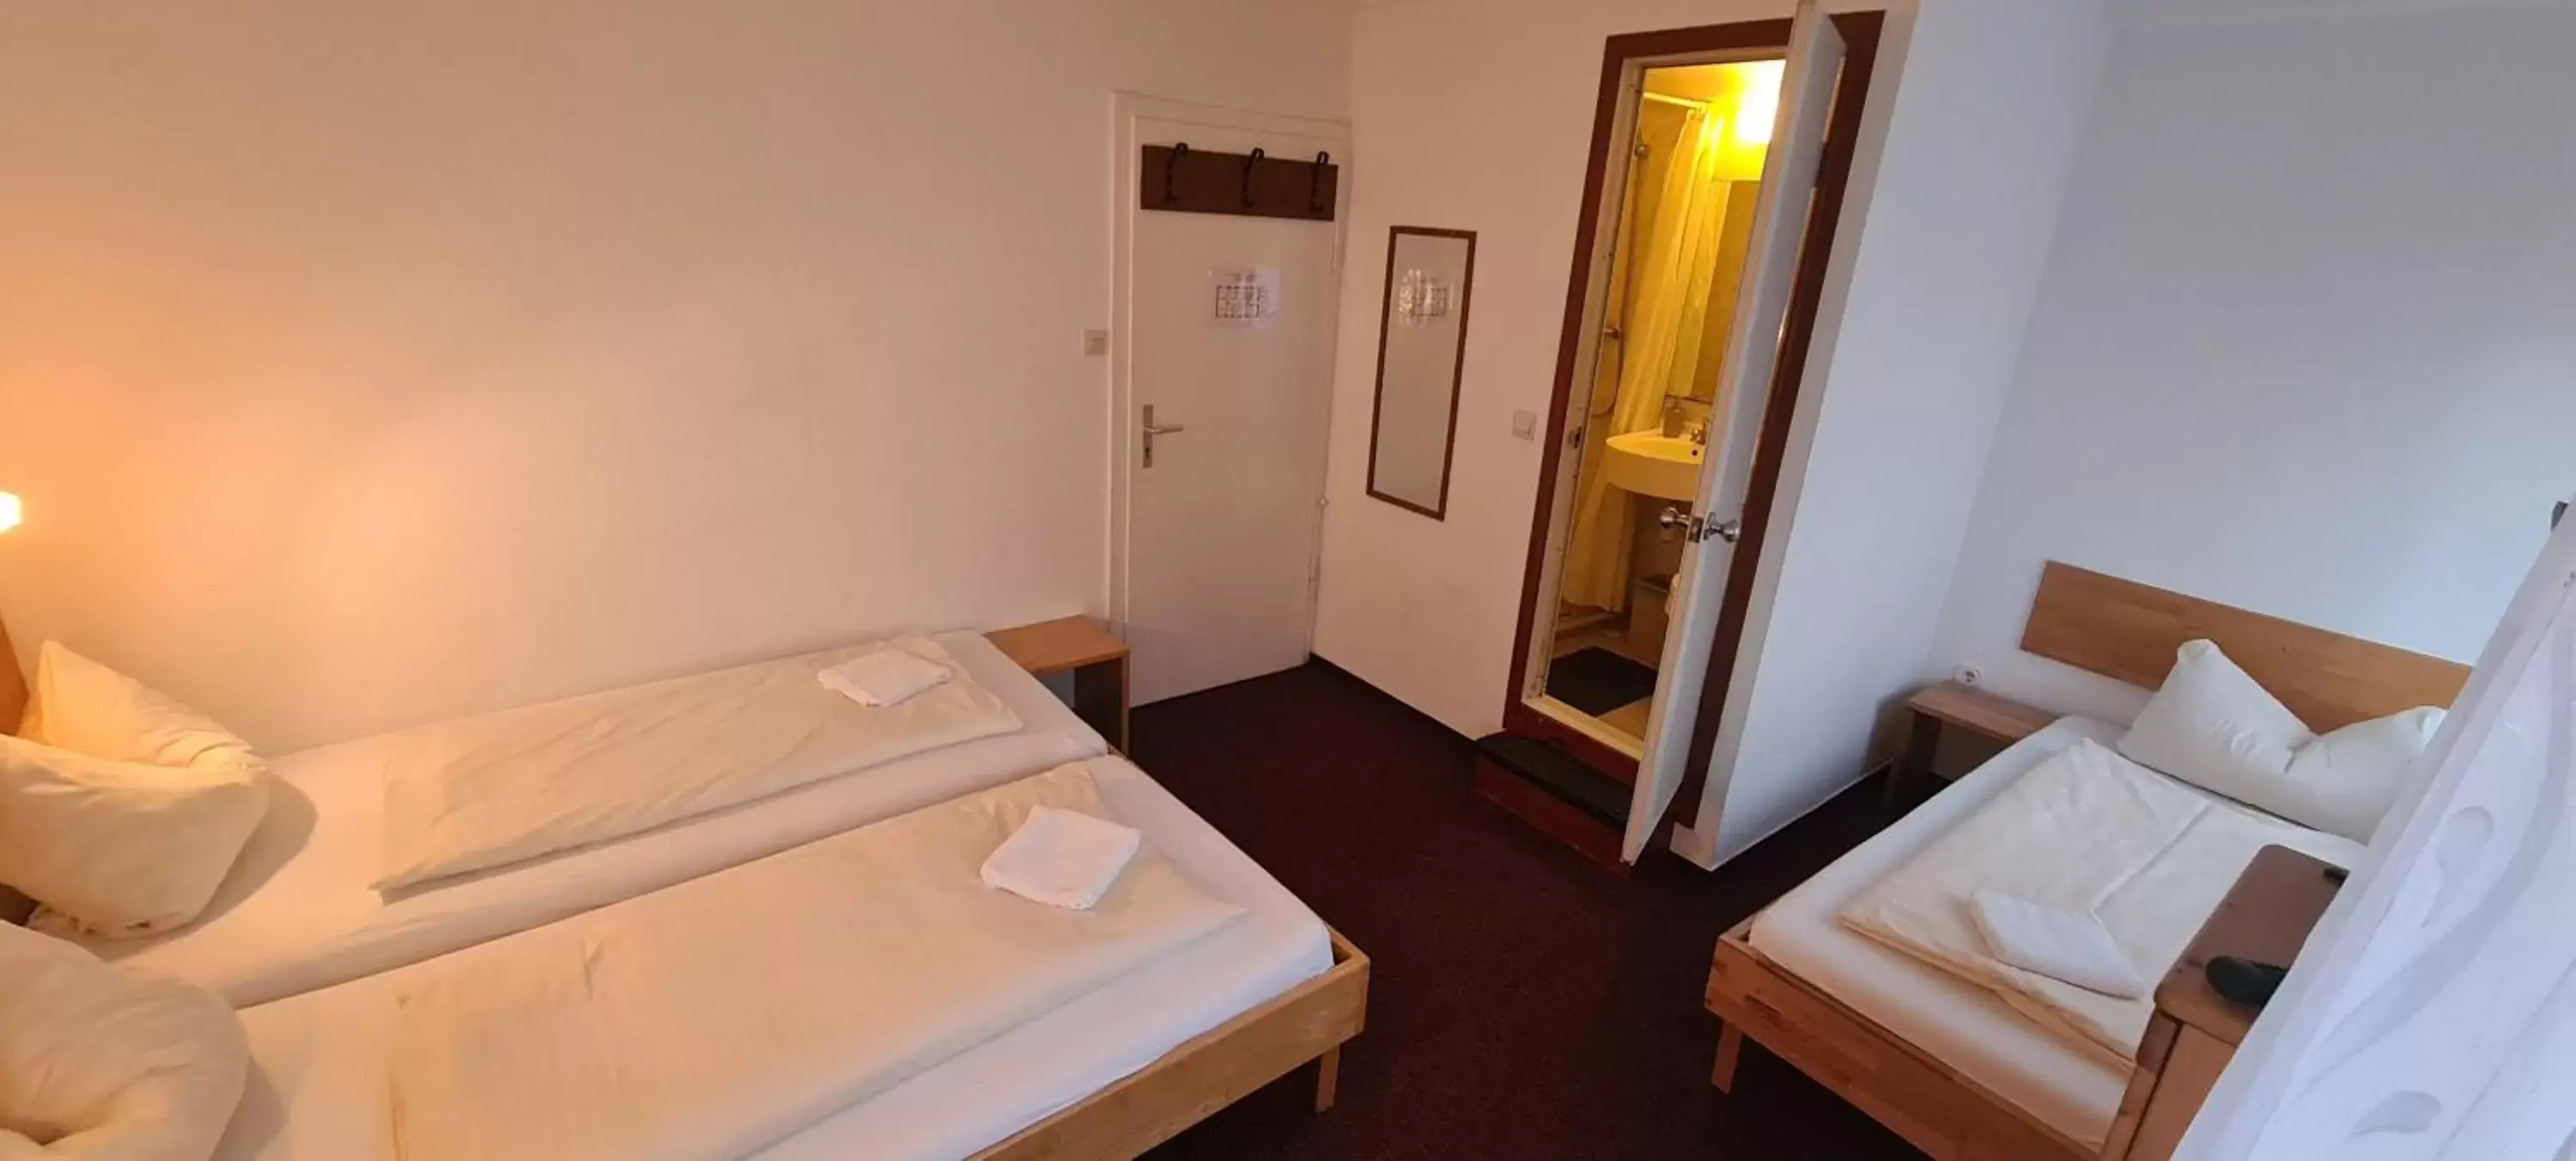 Standard Triple Room in Hotel Lamm